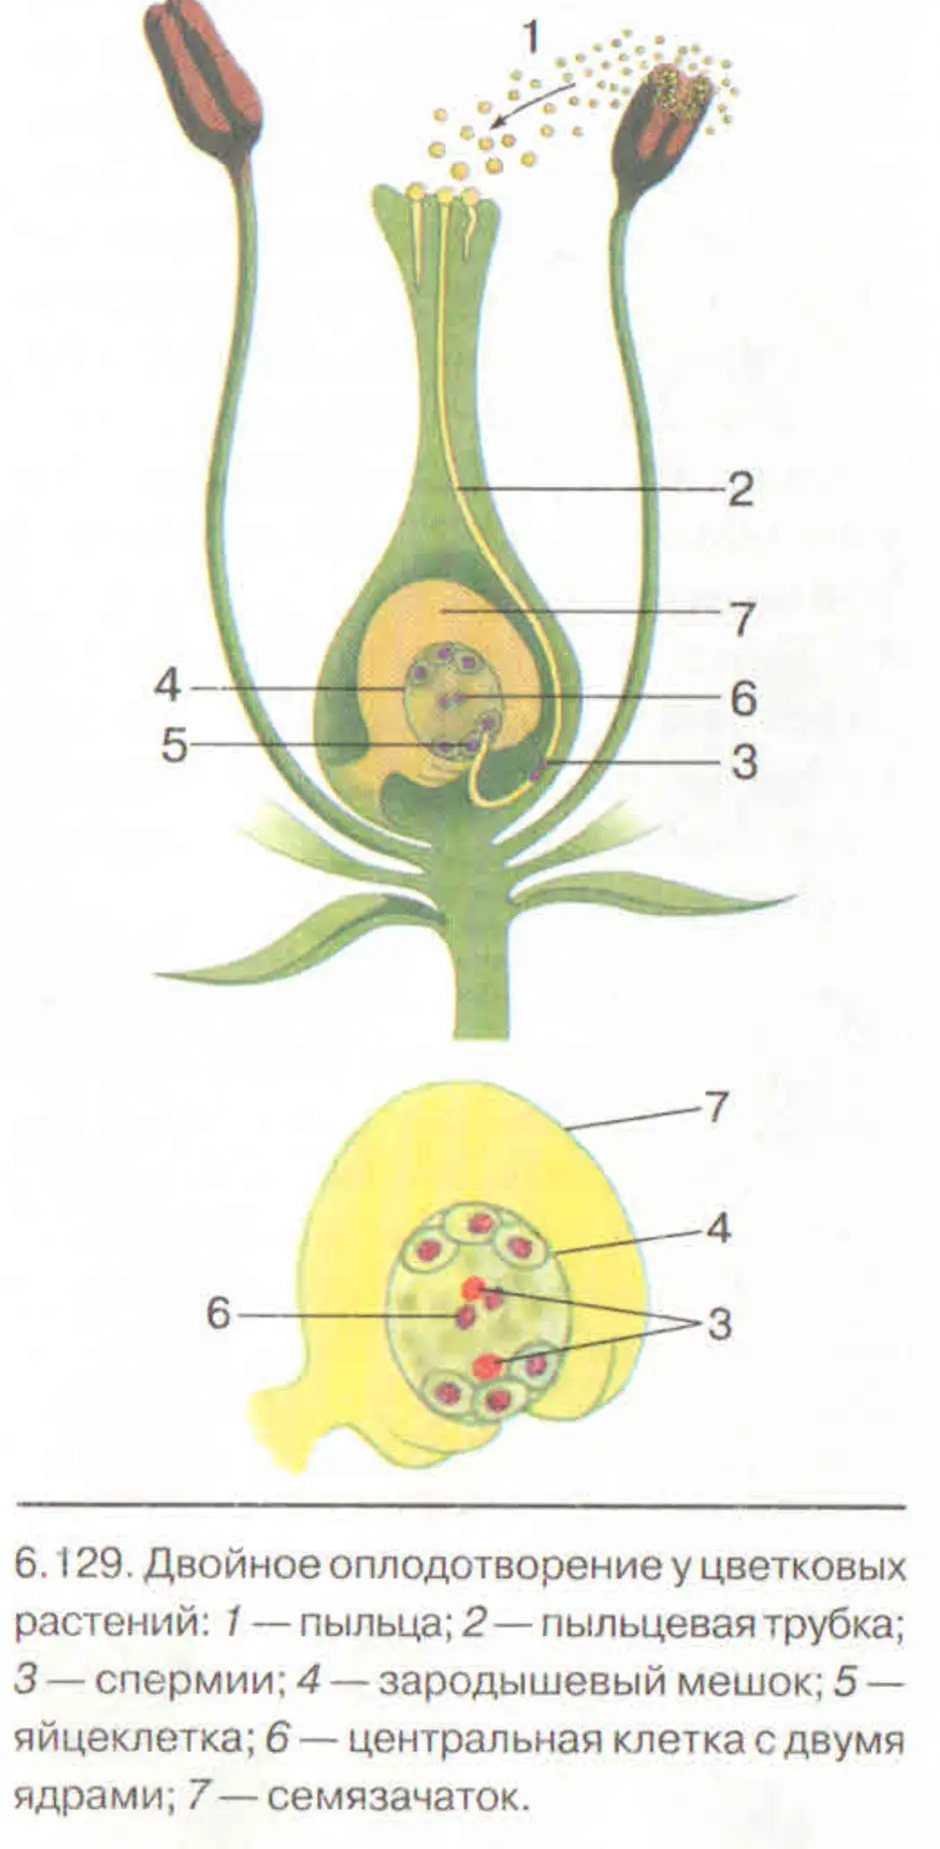 Спермий покрытосеменных растений. Схема двойного оплодотворения у растений. Схема оплодотворения у цветковых растений. Схема двойного оплодотворения у покрытосеменных растений. Строение цветка и двойное оплодотворение у цветковых растений.